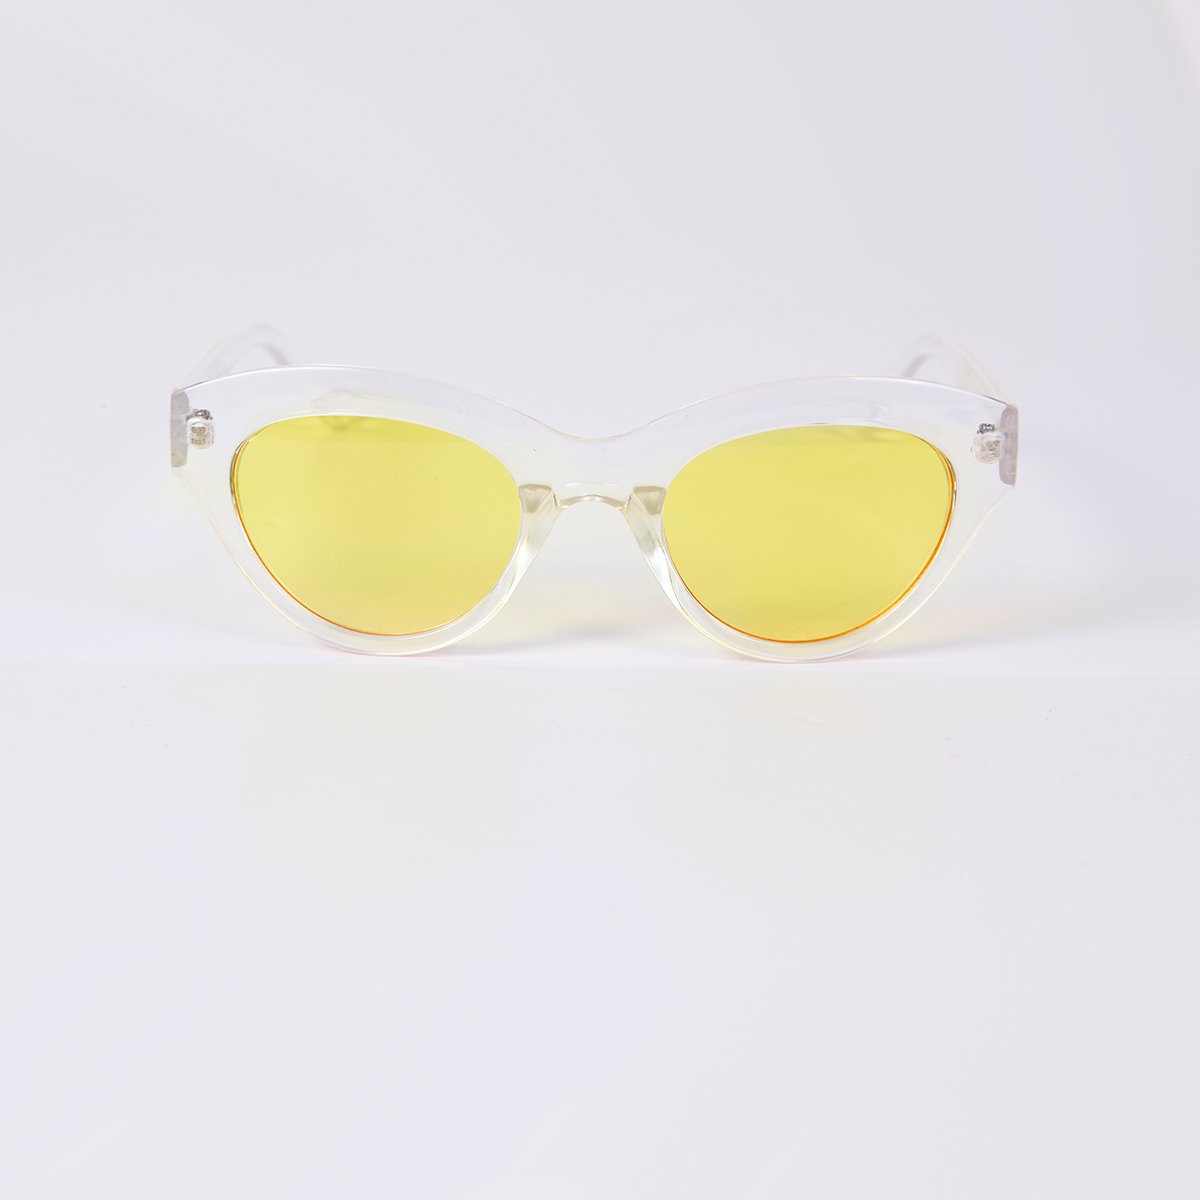 Kedi Güneş Gözlüğü - Sarı Şeffaf Cam